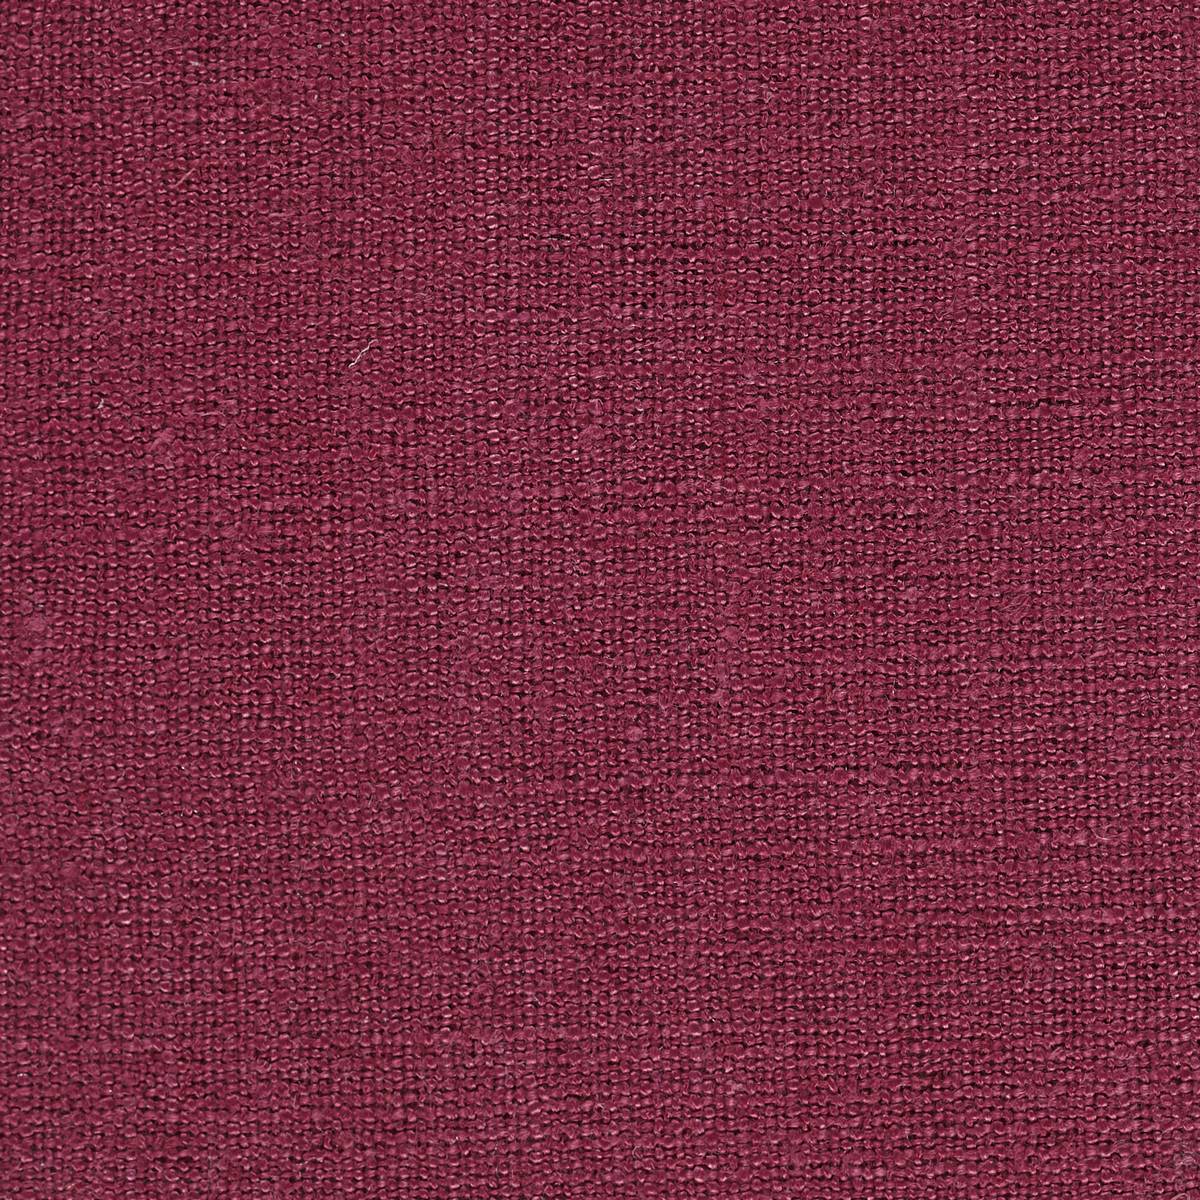 Harmonic Granita Fabric by Harlequin